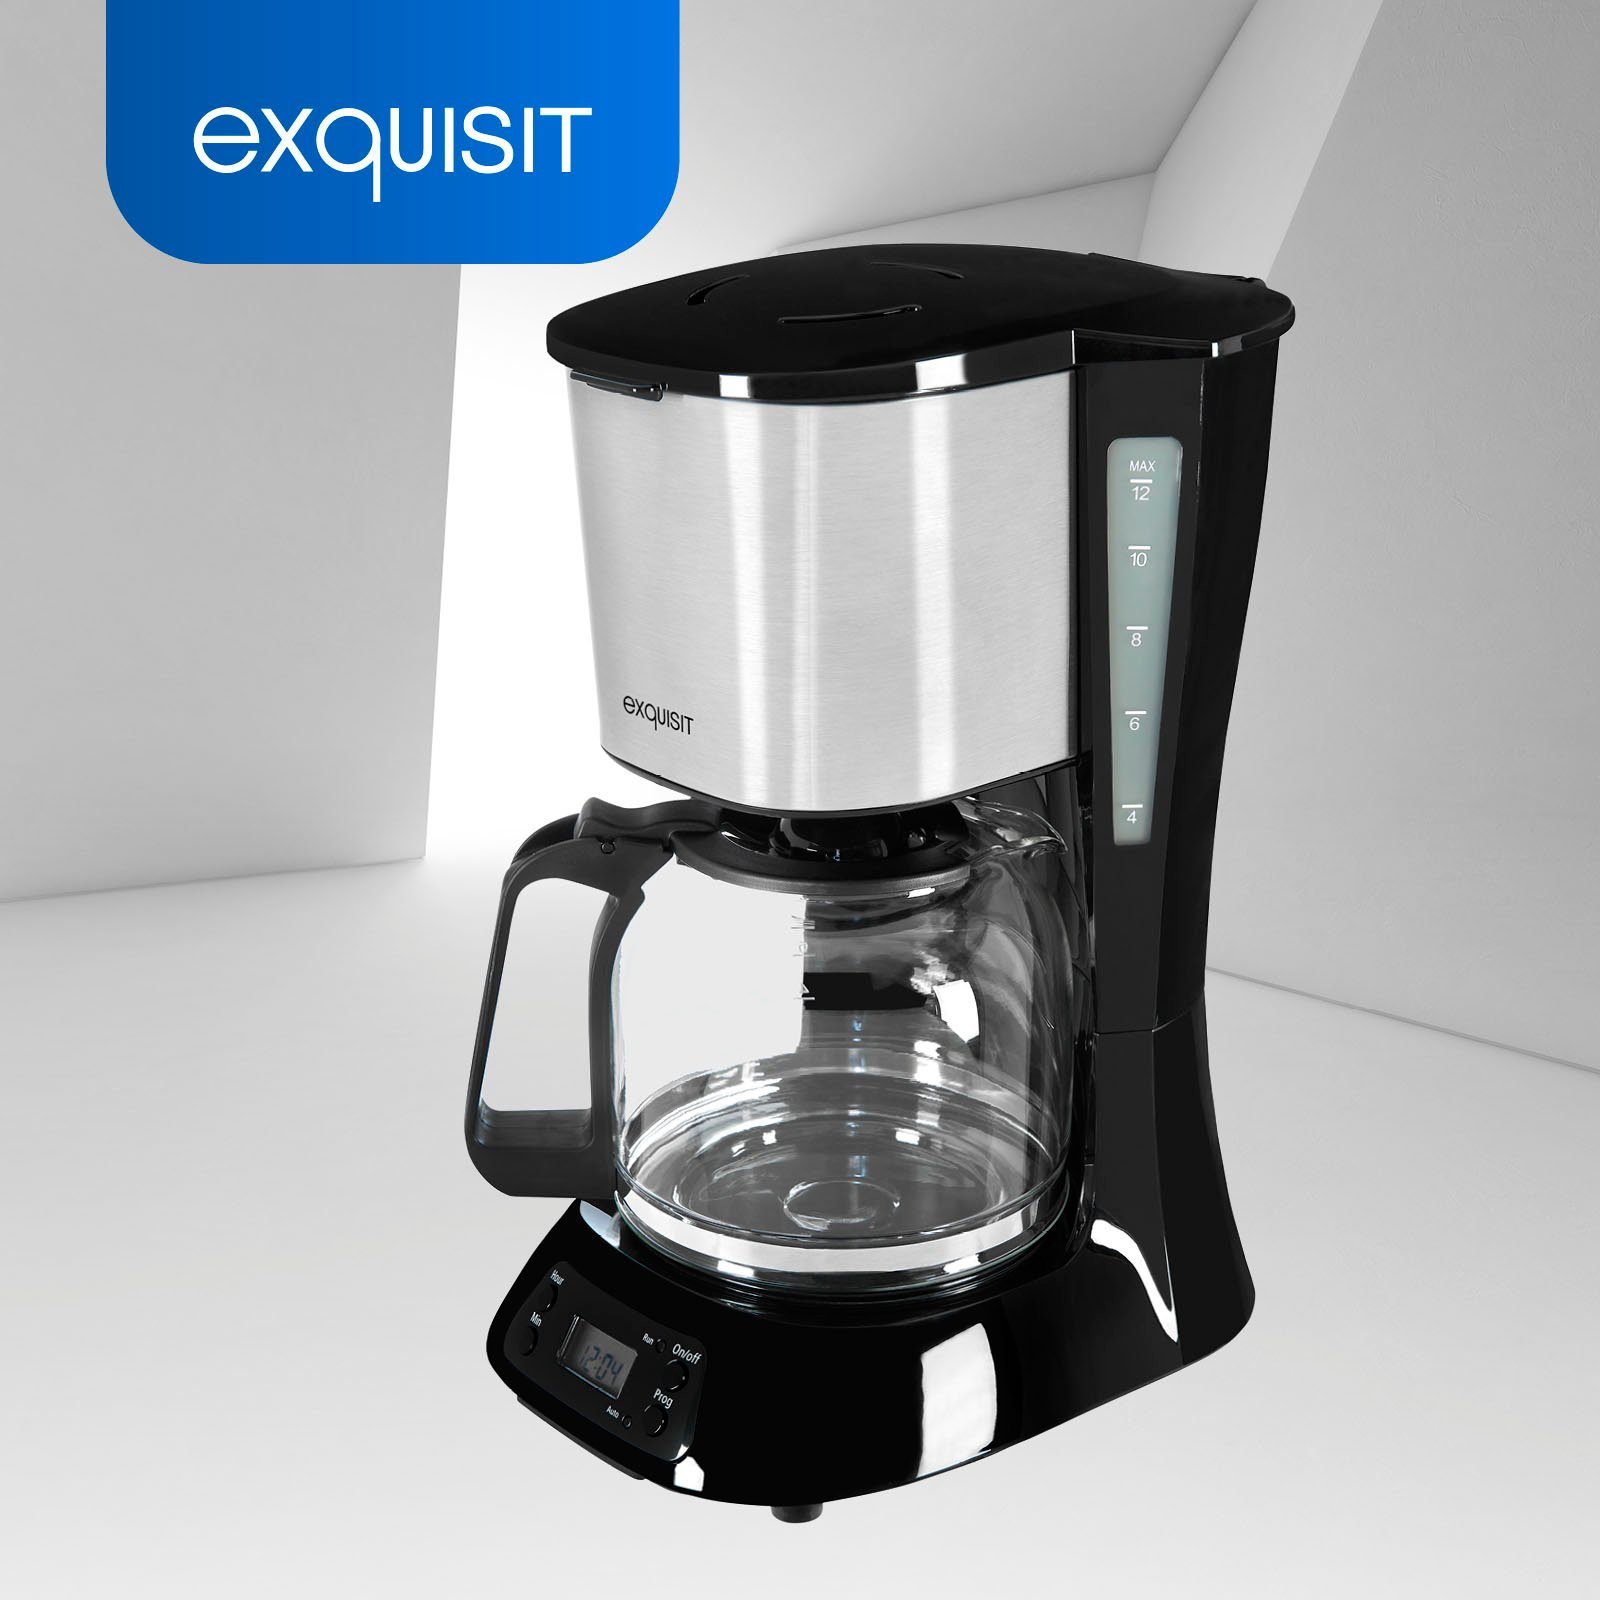 KA exquisit Filterkaffeemaschine Kaffeekanne, 6119 1,5l Papierfilter isw, 1x4